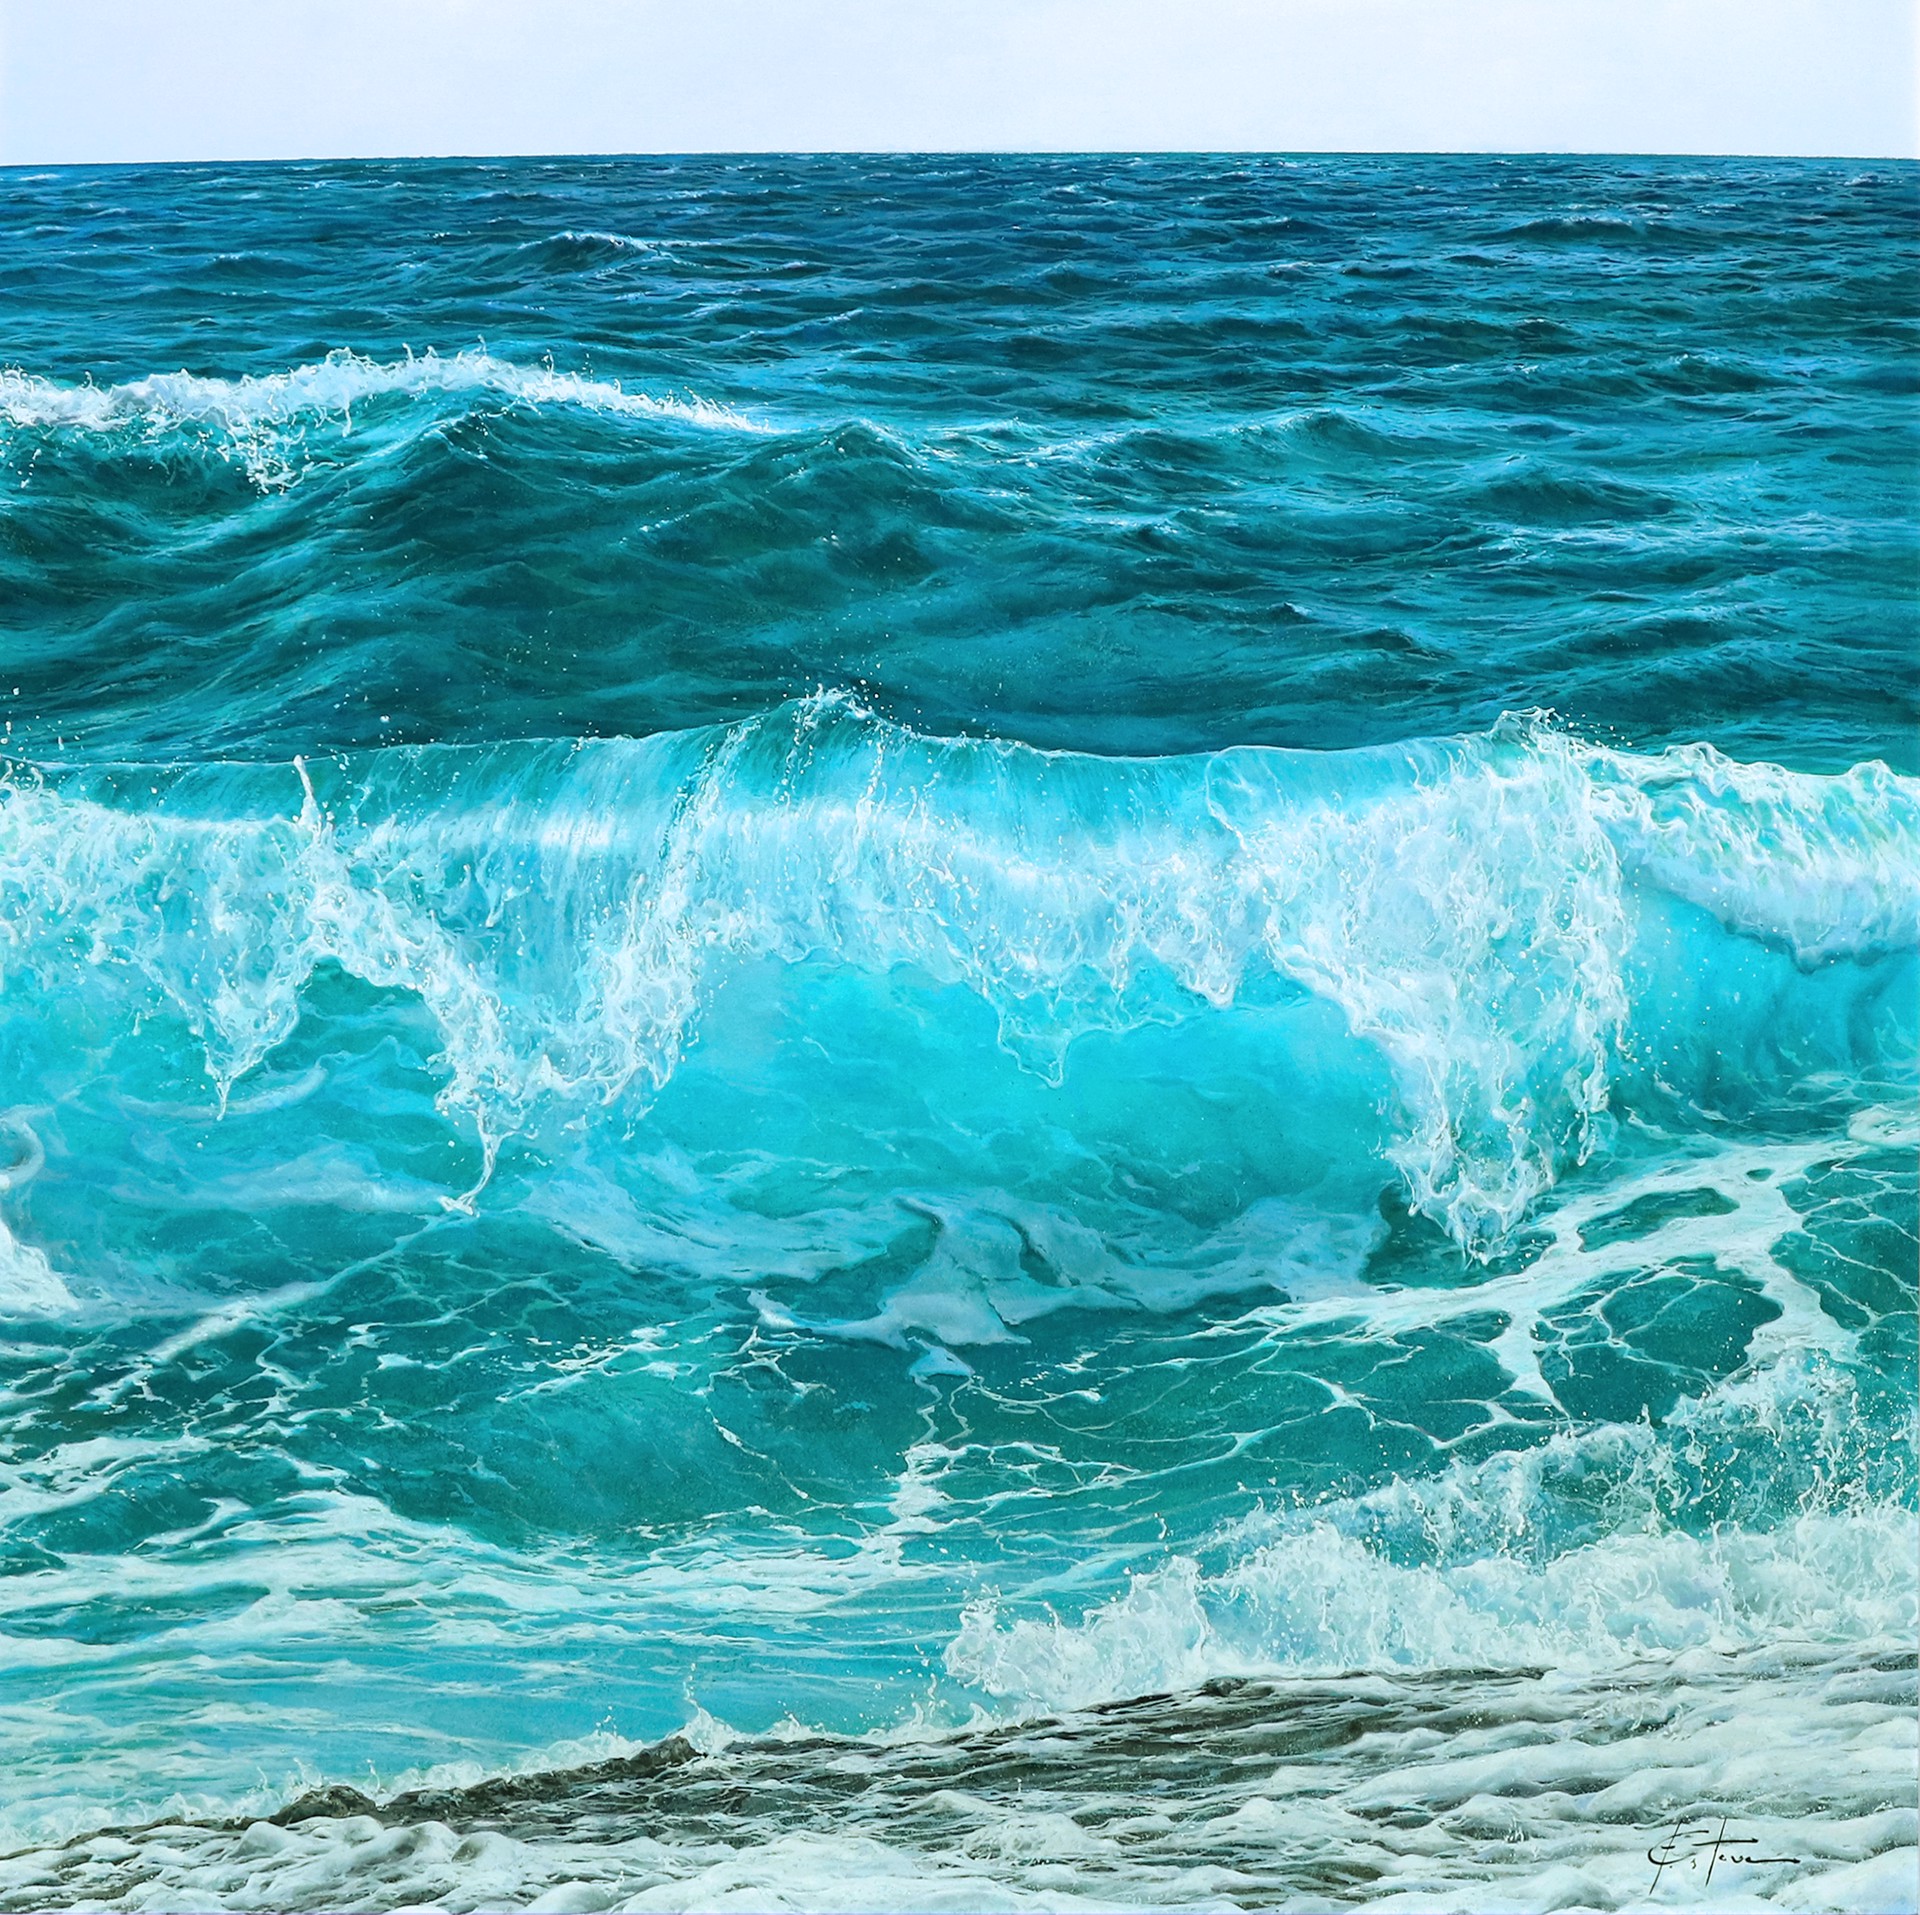 "Aqua Blue Waters" by Marc Esteve